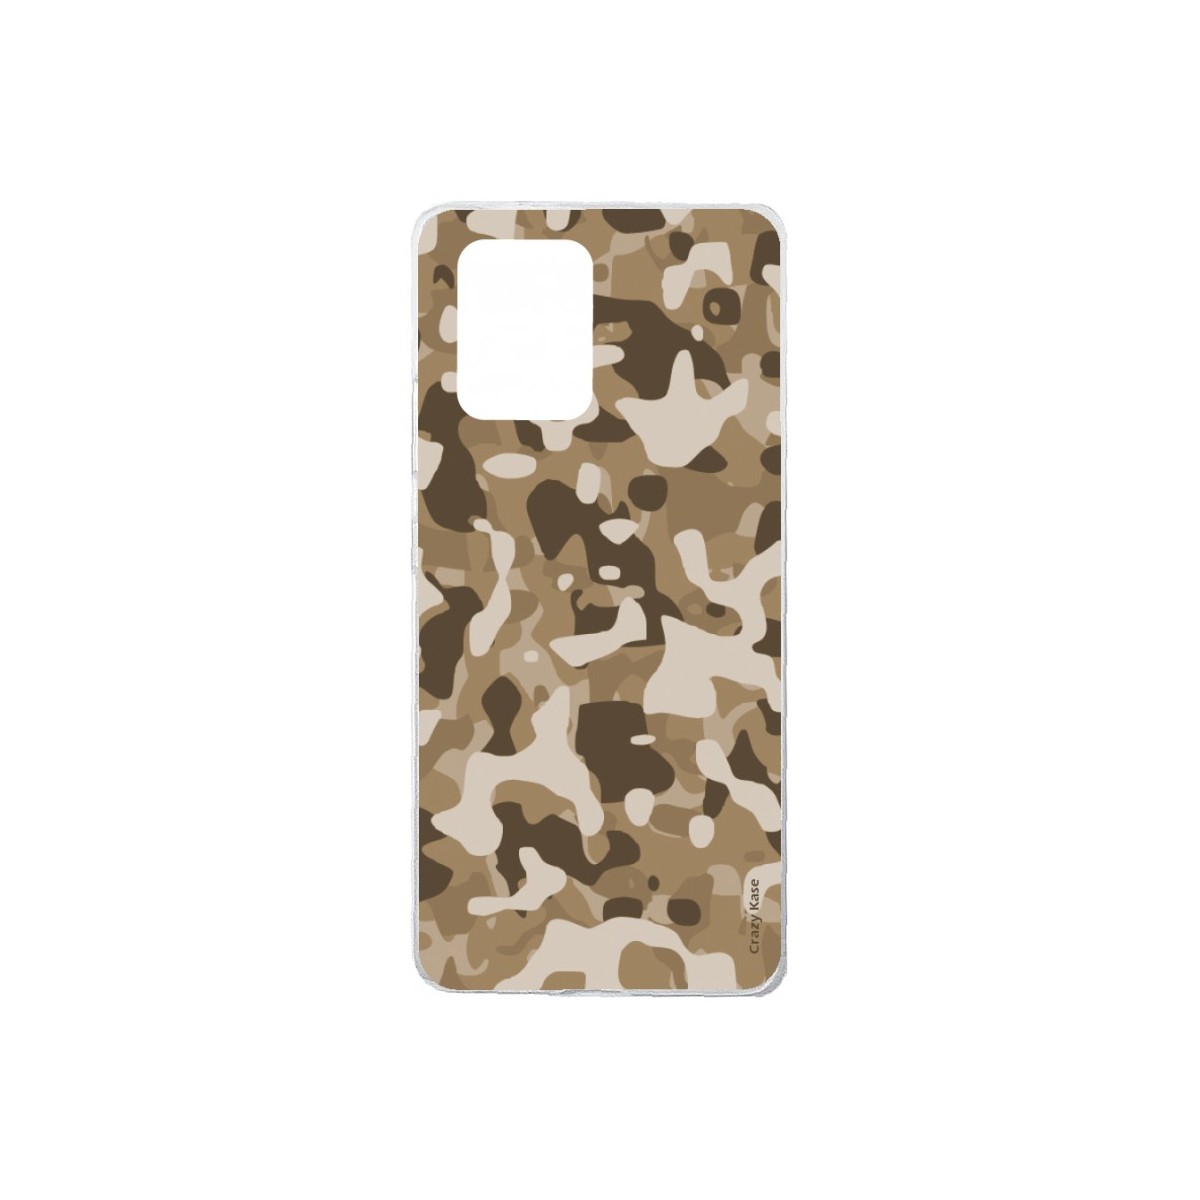 Coque Samsung Galaxy S10 Lite souple Camouflage militaire désert Crazy Kase